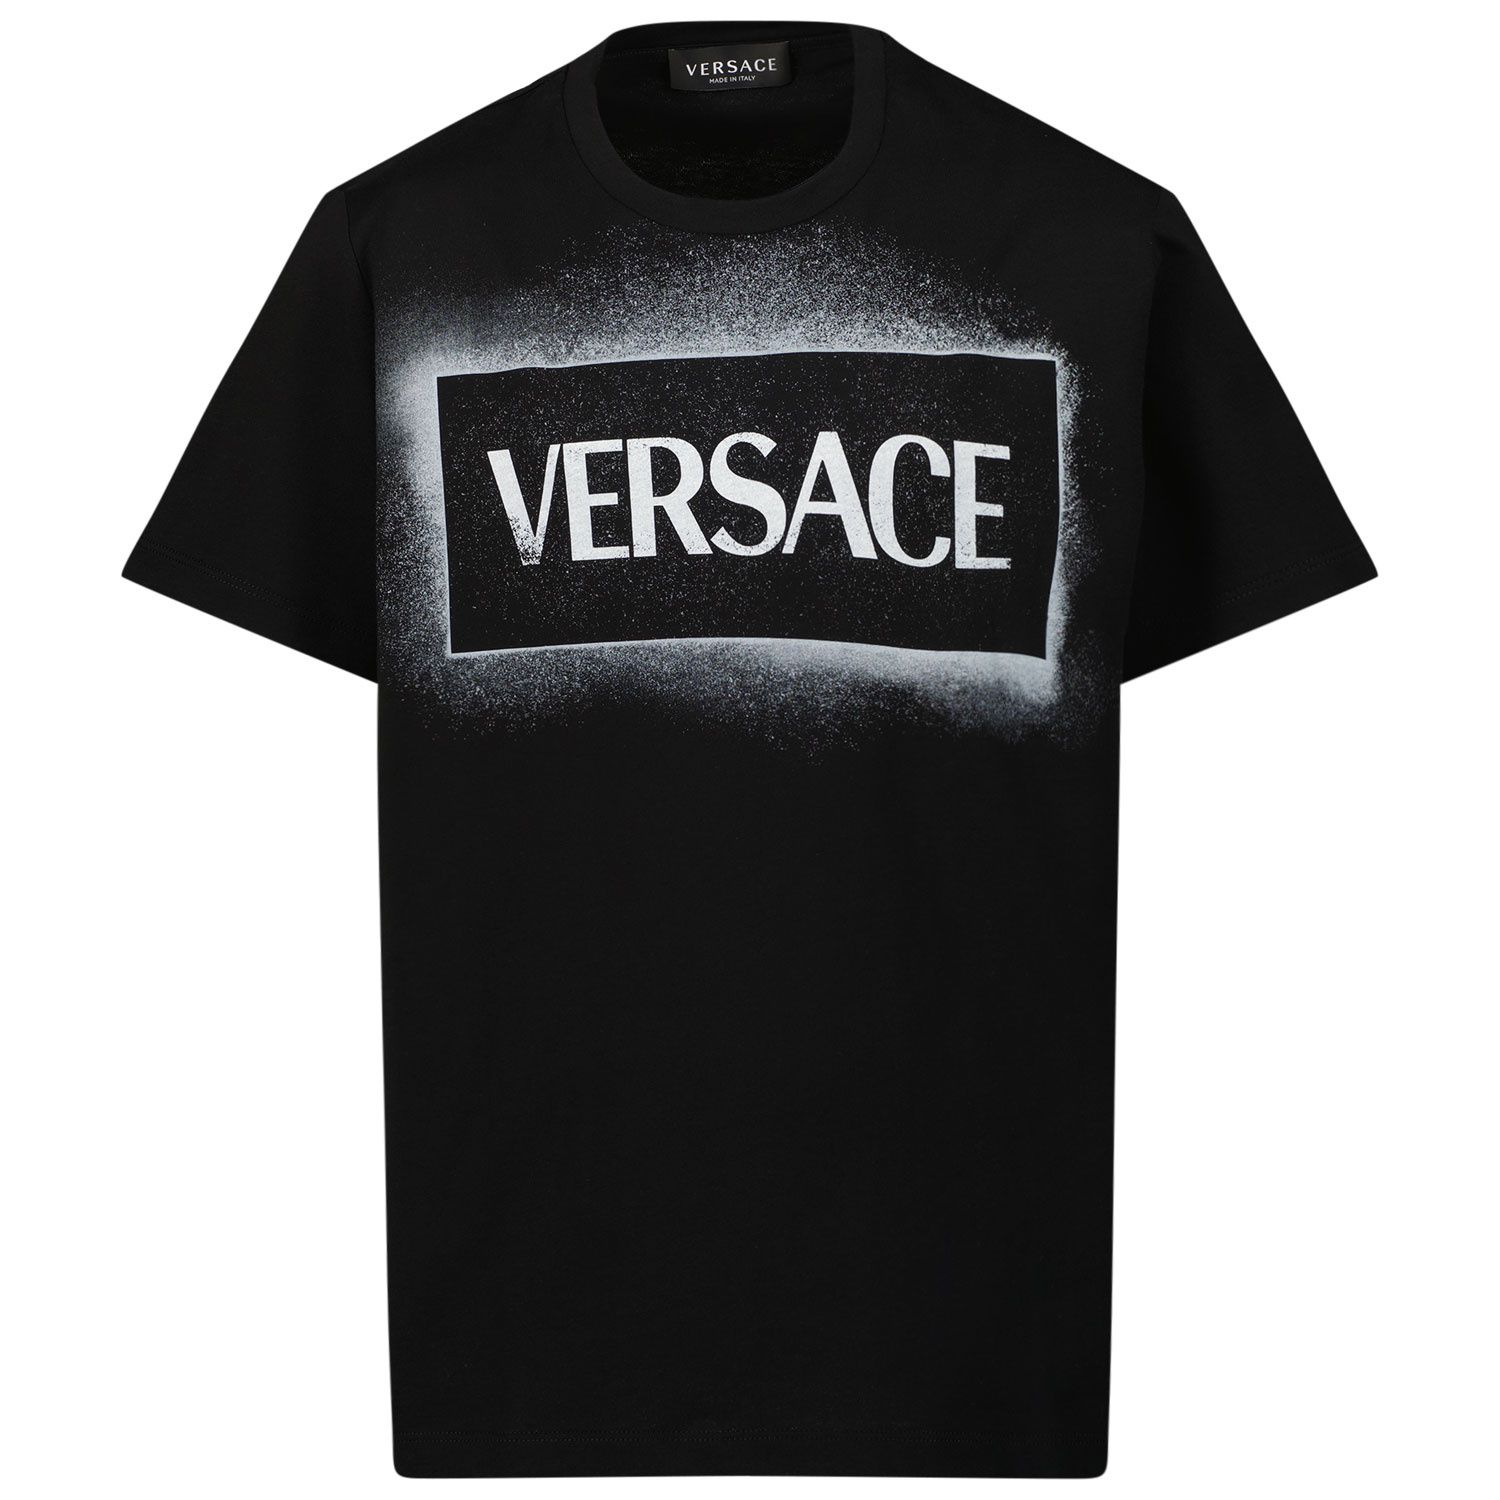 Afbeelding van Versace 1000129 1A02684 kinder t-shirt zwart